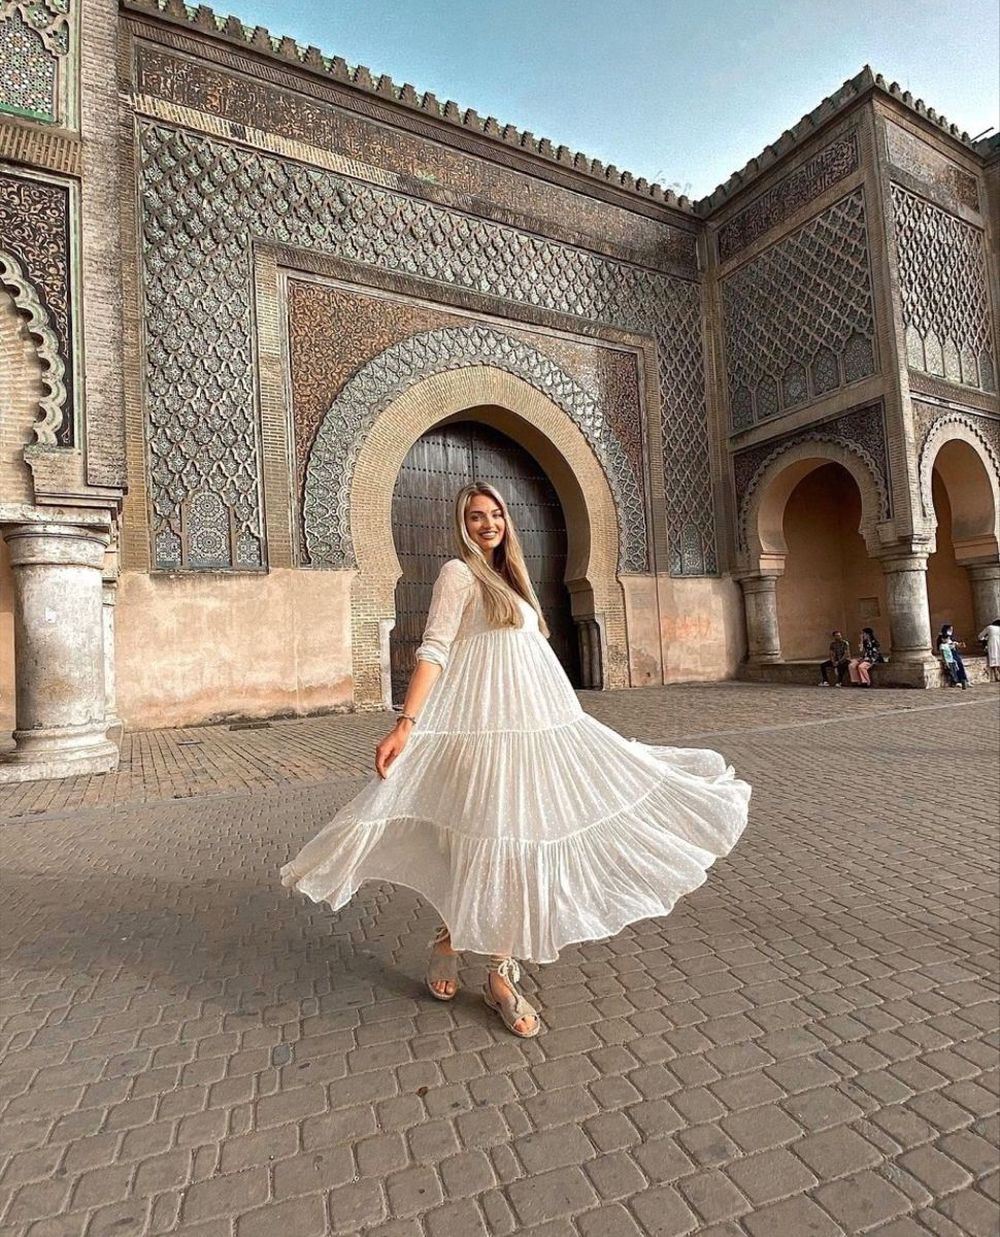 Vẻ đẹp hiện đại, lịch sử của thành phố Meknes Maroc 6